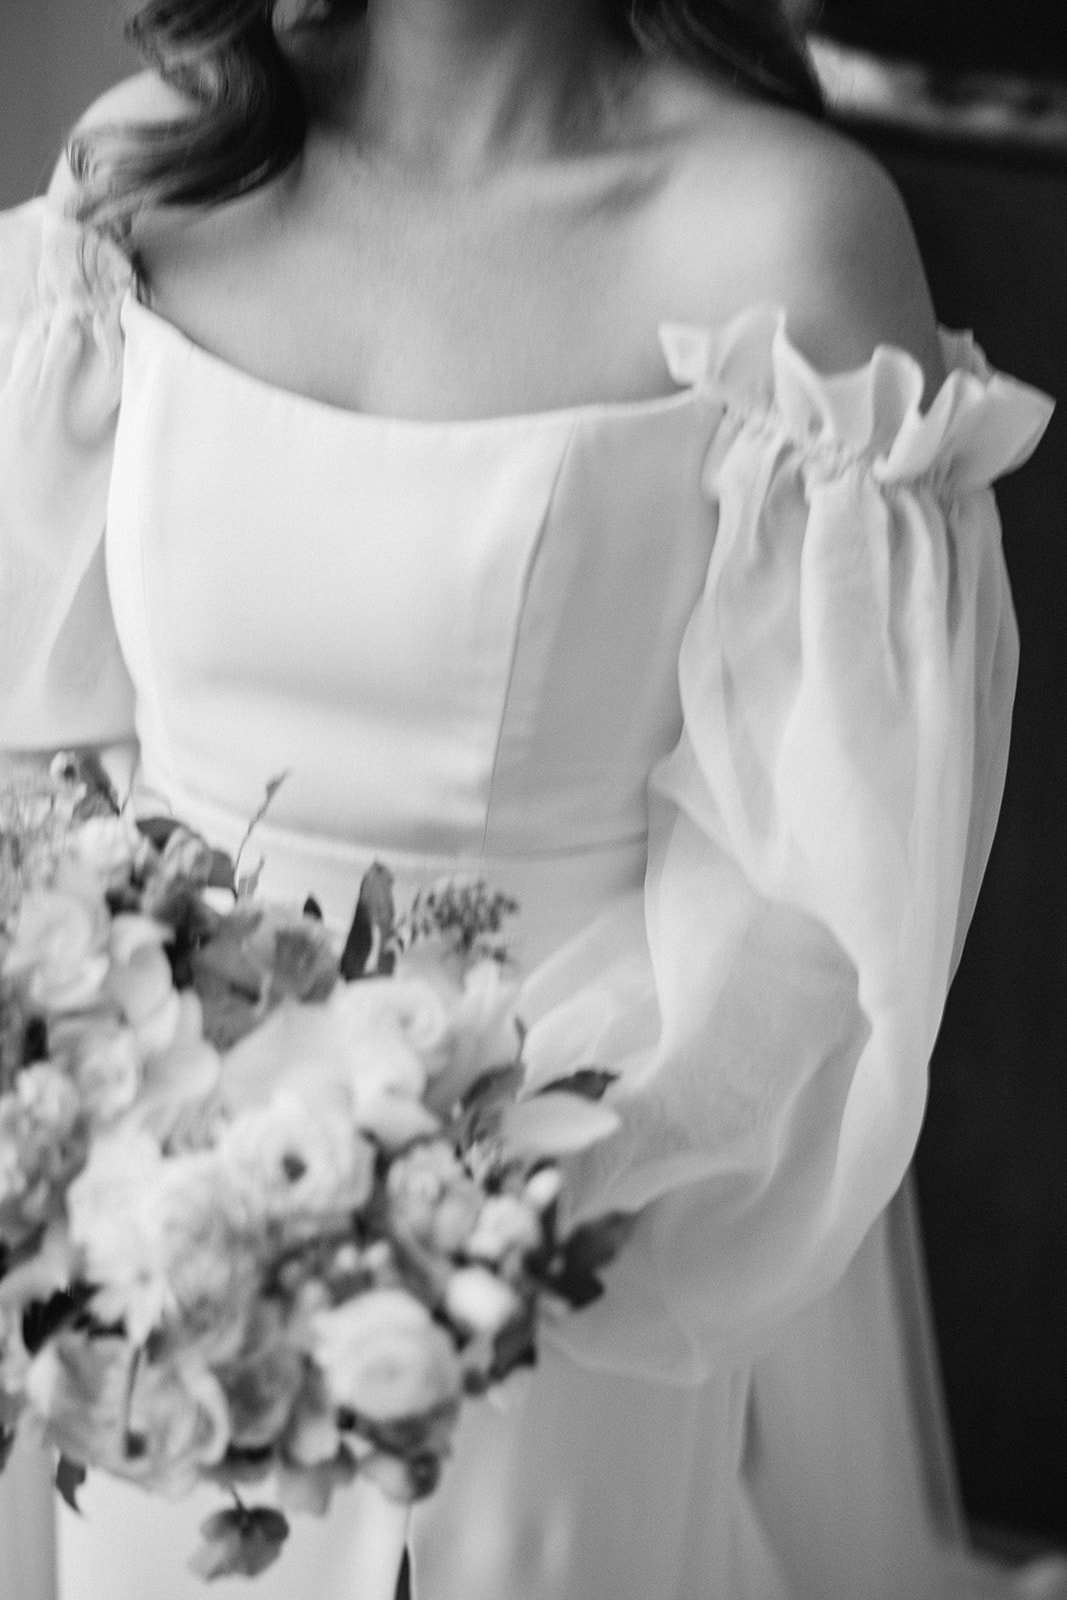 Redleaf wedding details of brides dress and flowers